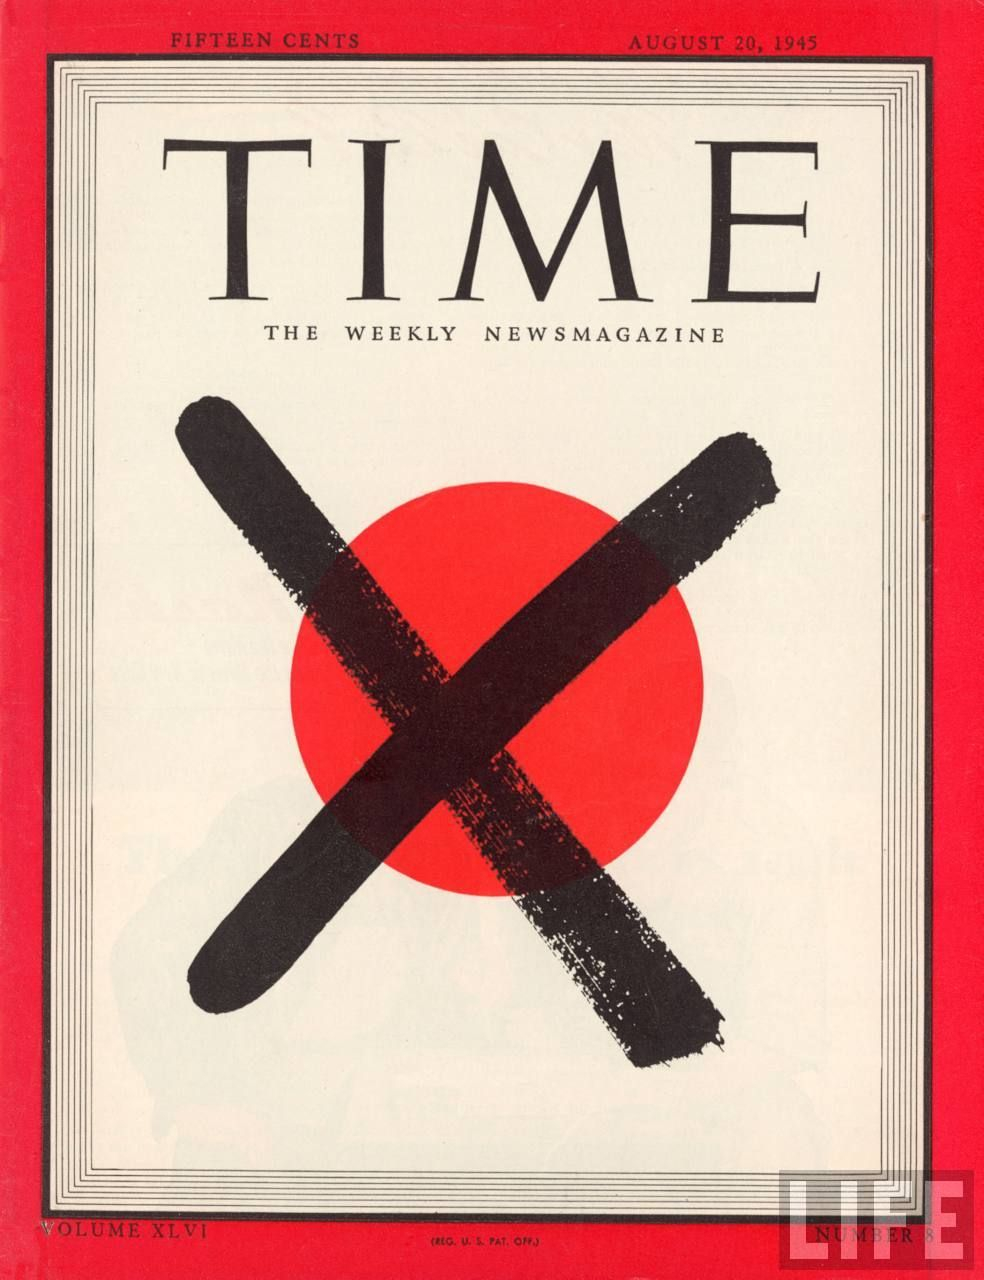 Đây là bìa ấn bản đầu tiên sau khi vũ khí hạt nhân được thả xuống Hiroshima (ngày 5/8) và Nagasaki (ngày 9/8). Vì màu đỏ trên lá cờ của Nhật Bản, một chữ thập đen đã được sử dụng để thay thế. Nhật Bản chính thức đầu hàng vào ngày 2/9.